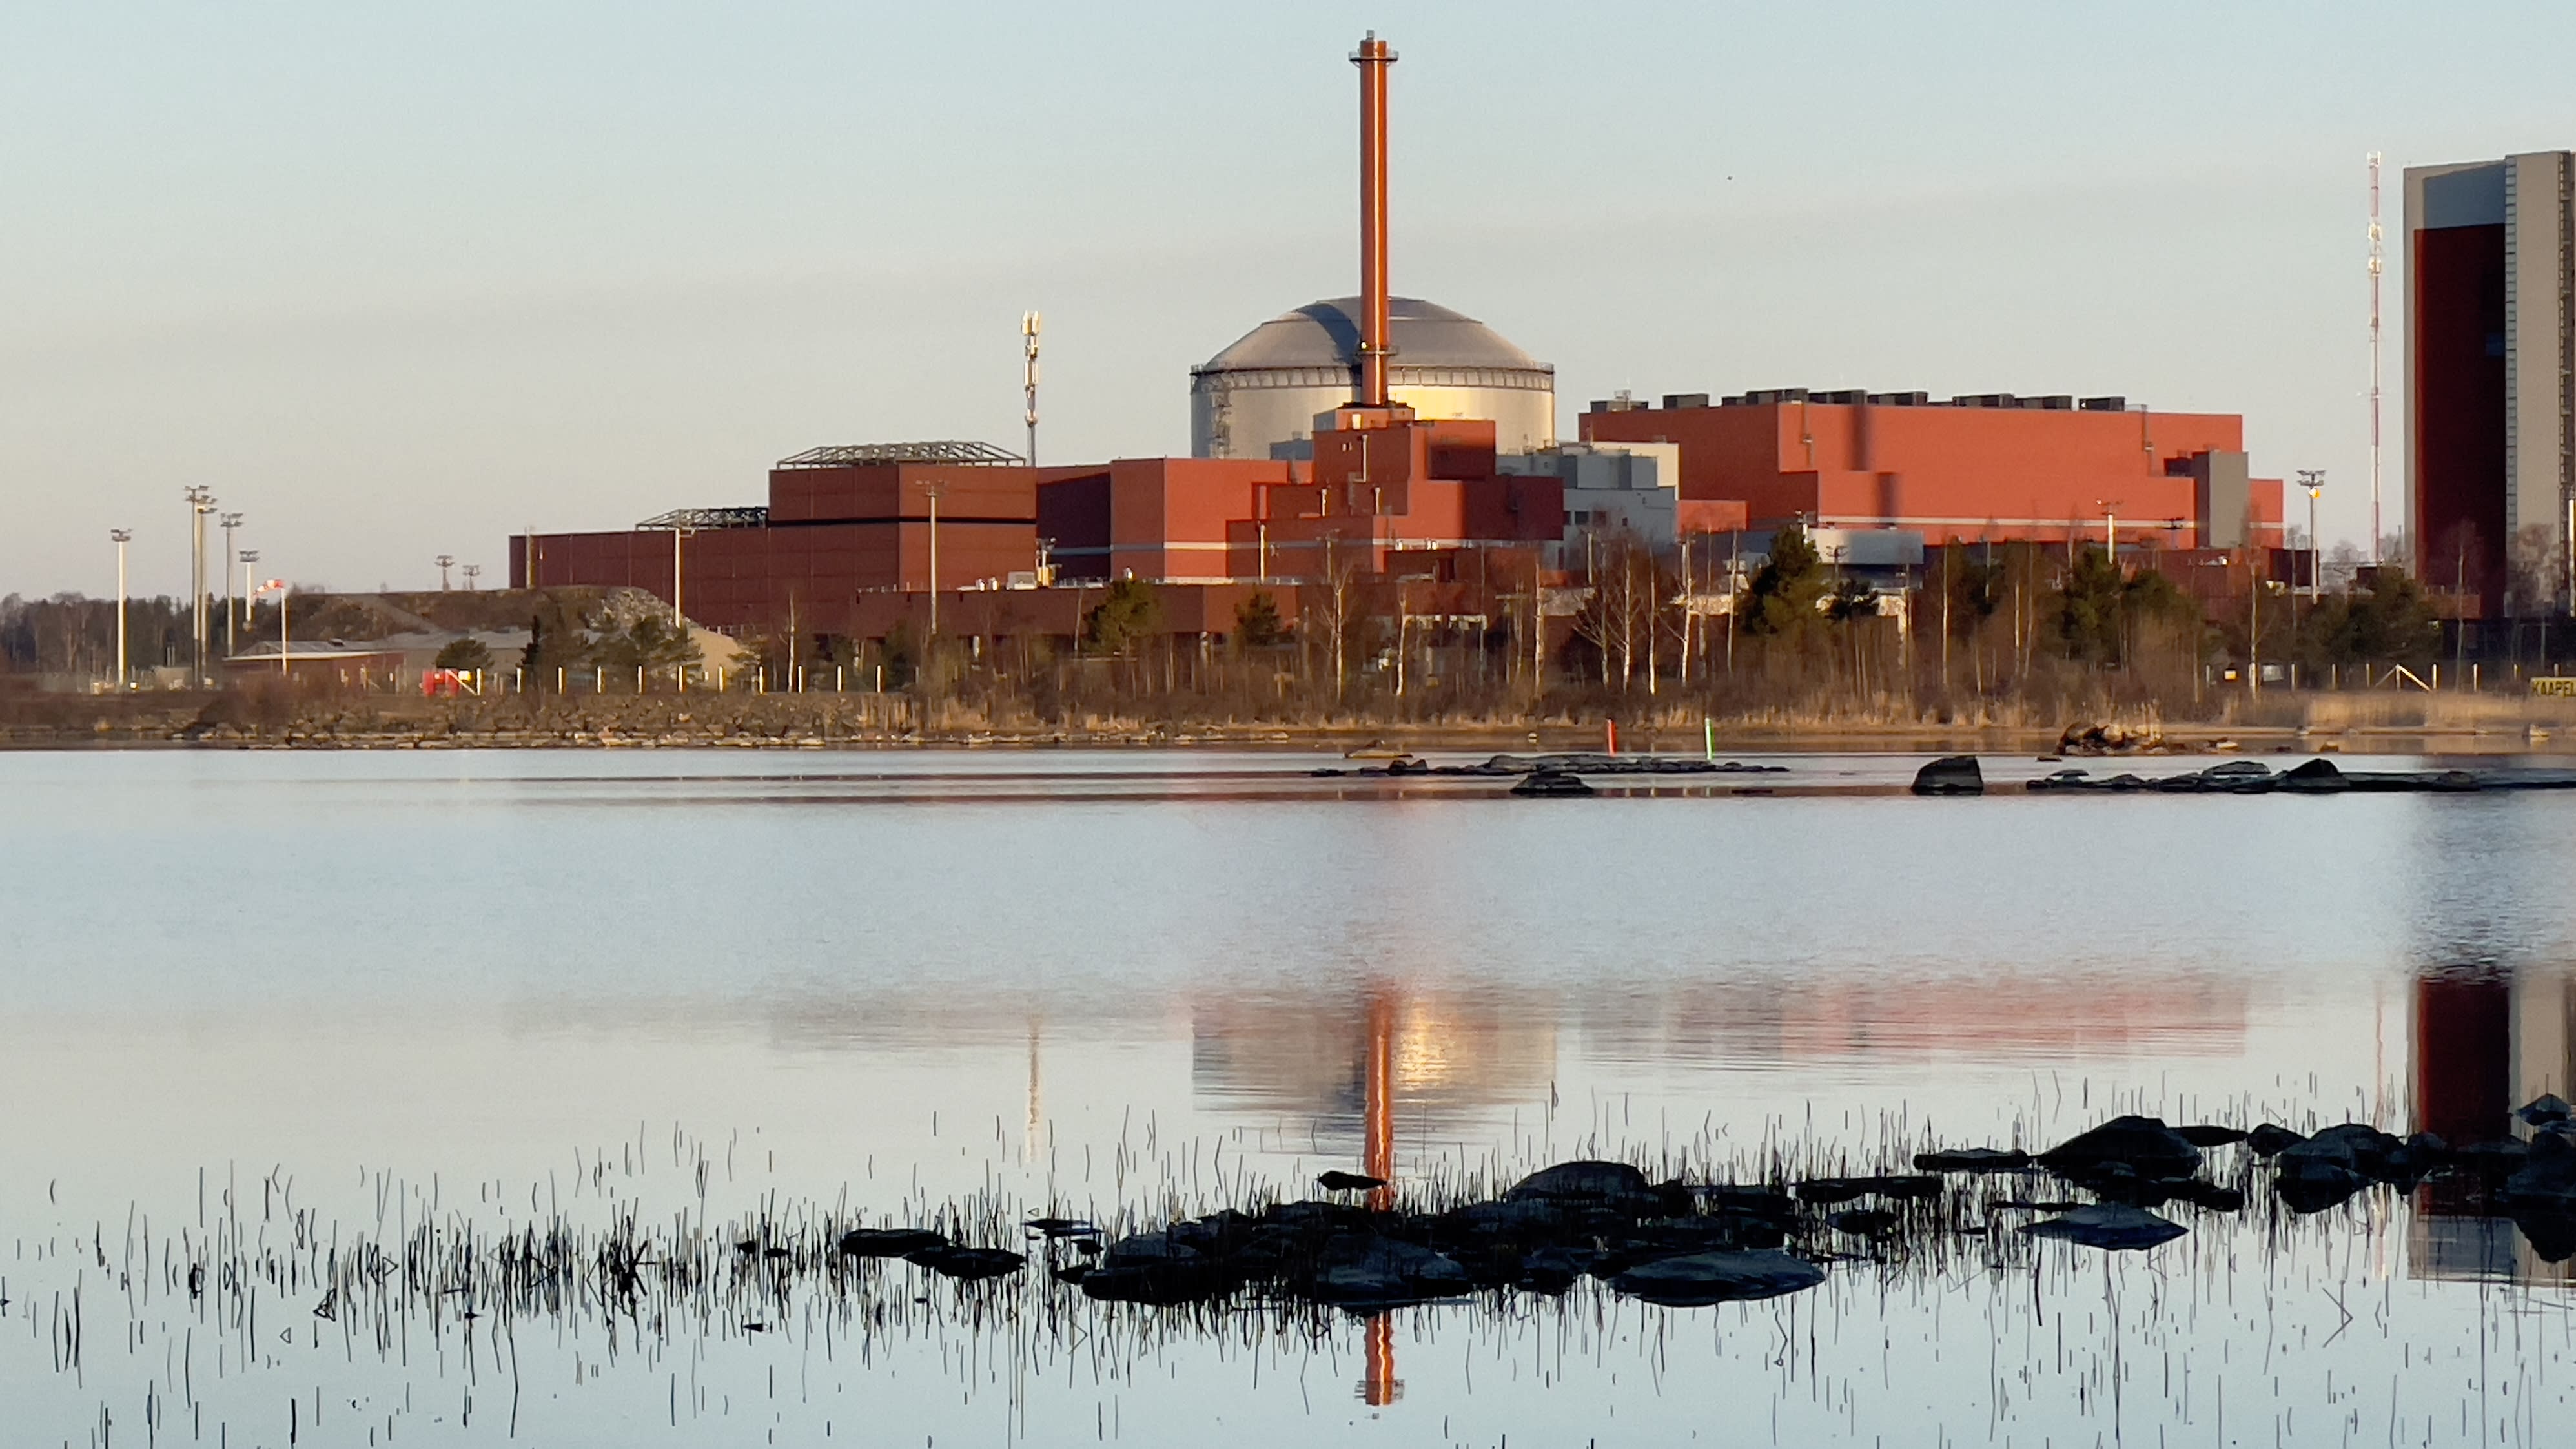 أحدث محطة للطاقة النووية في فنلندا تسخن البحر وتضر بالطبيعة